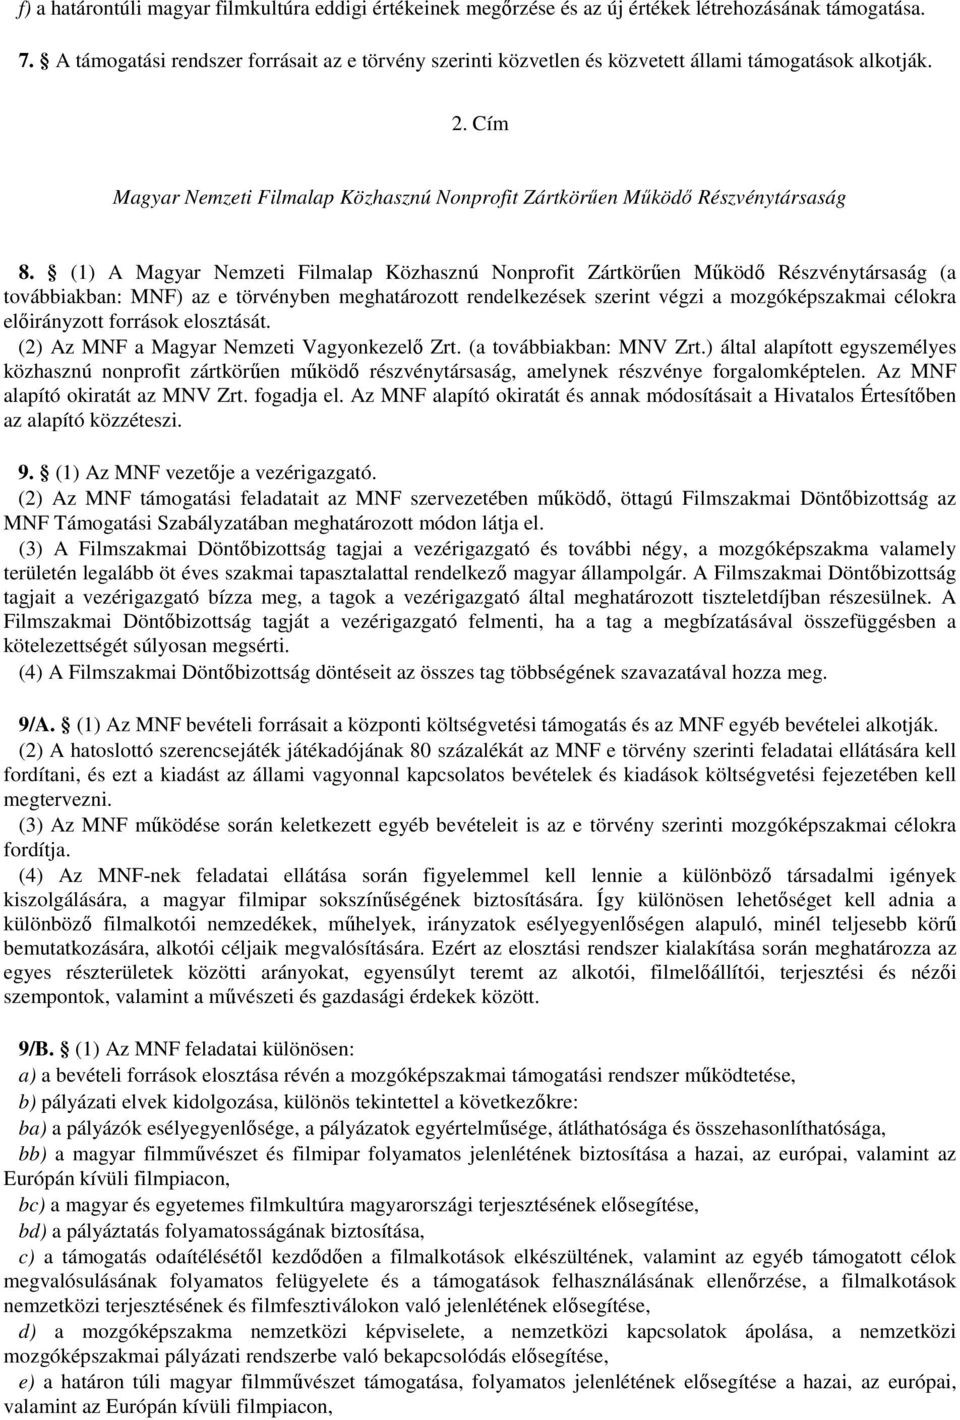 (1) A Magyar Nemzeti Filmalap Közhasznú Nonprofit Zártkörűen Működő Részvénytársaság (a továbbiakban: MNF) az e törvényben meghatározott rendelkezések szerint végzi a mozgóképszakmai célokra